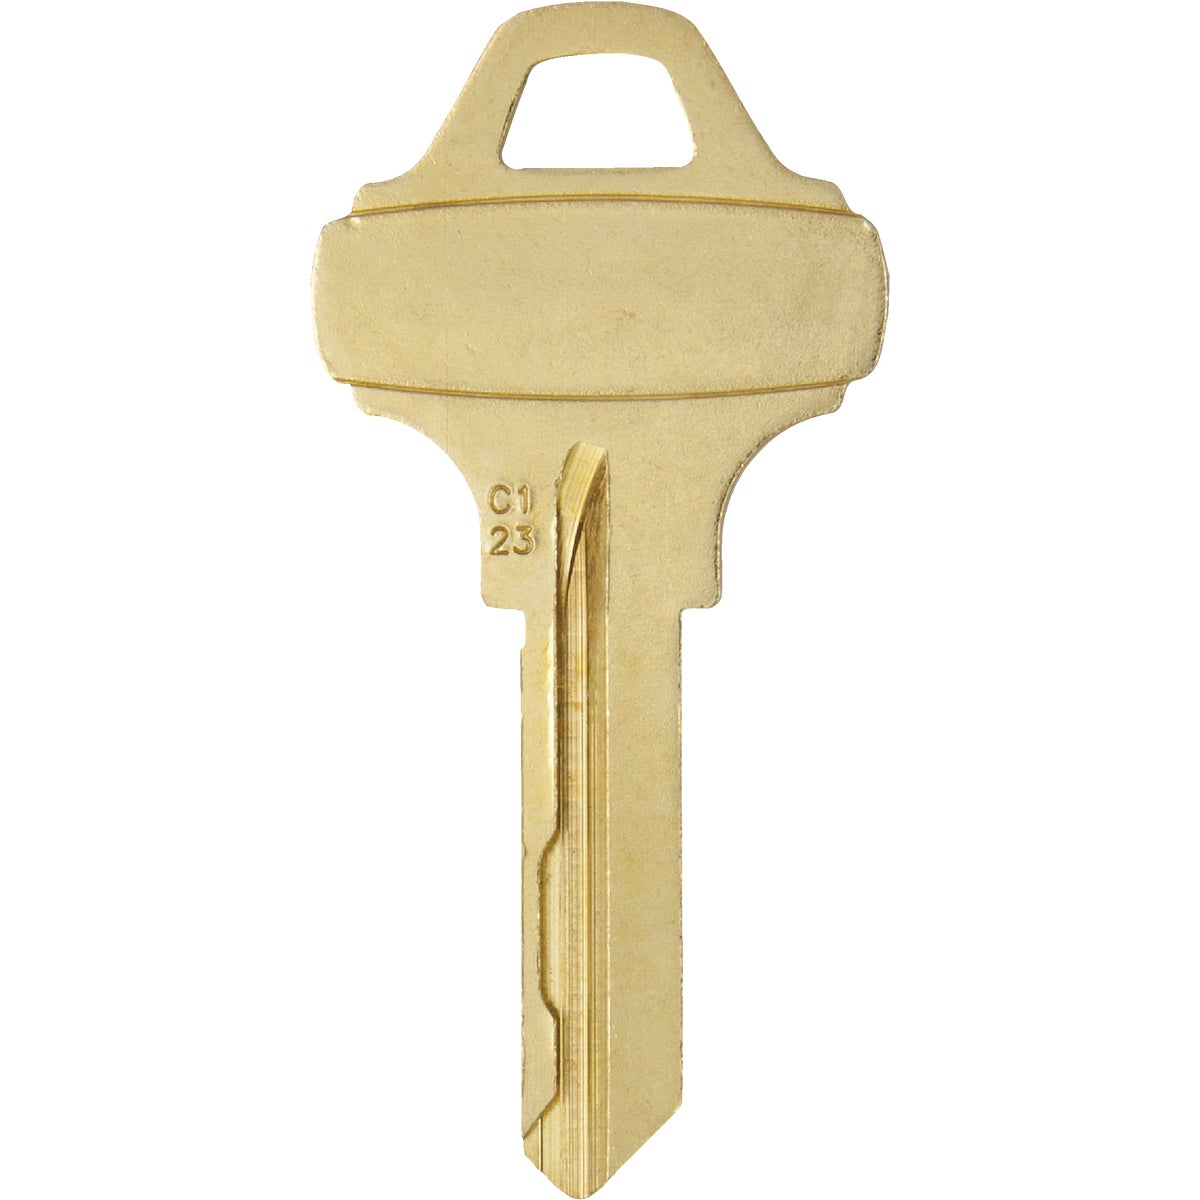 Item 201207, Residential key blank, fits Schlage Everest locks.